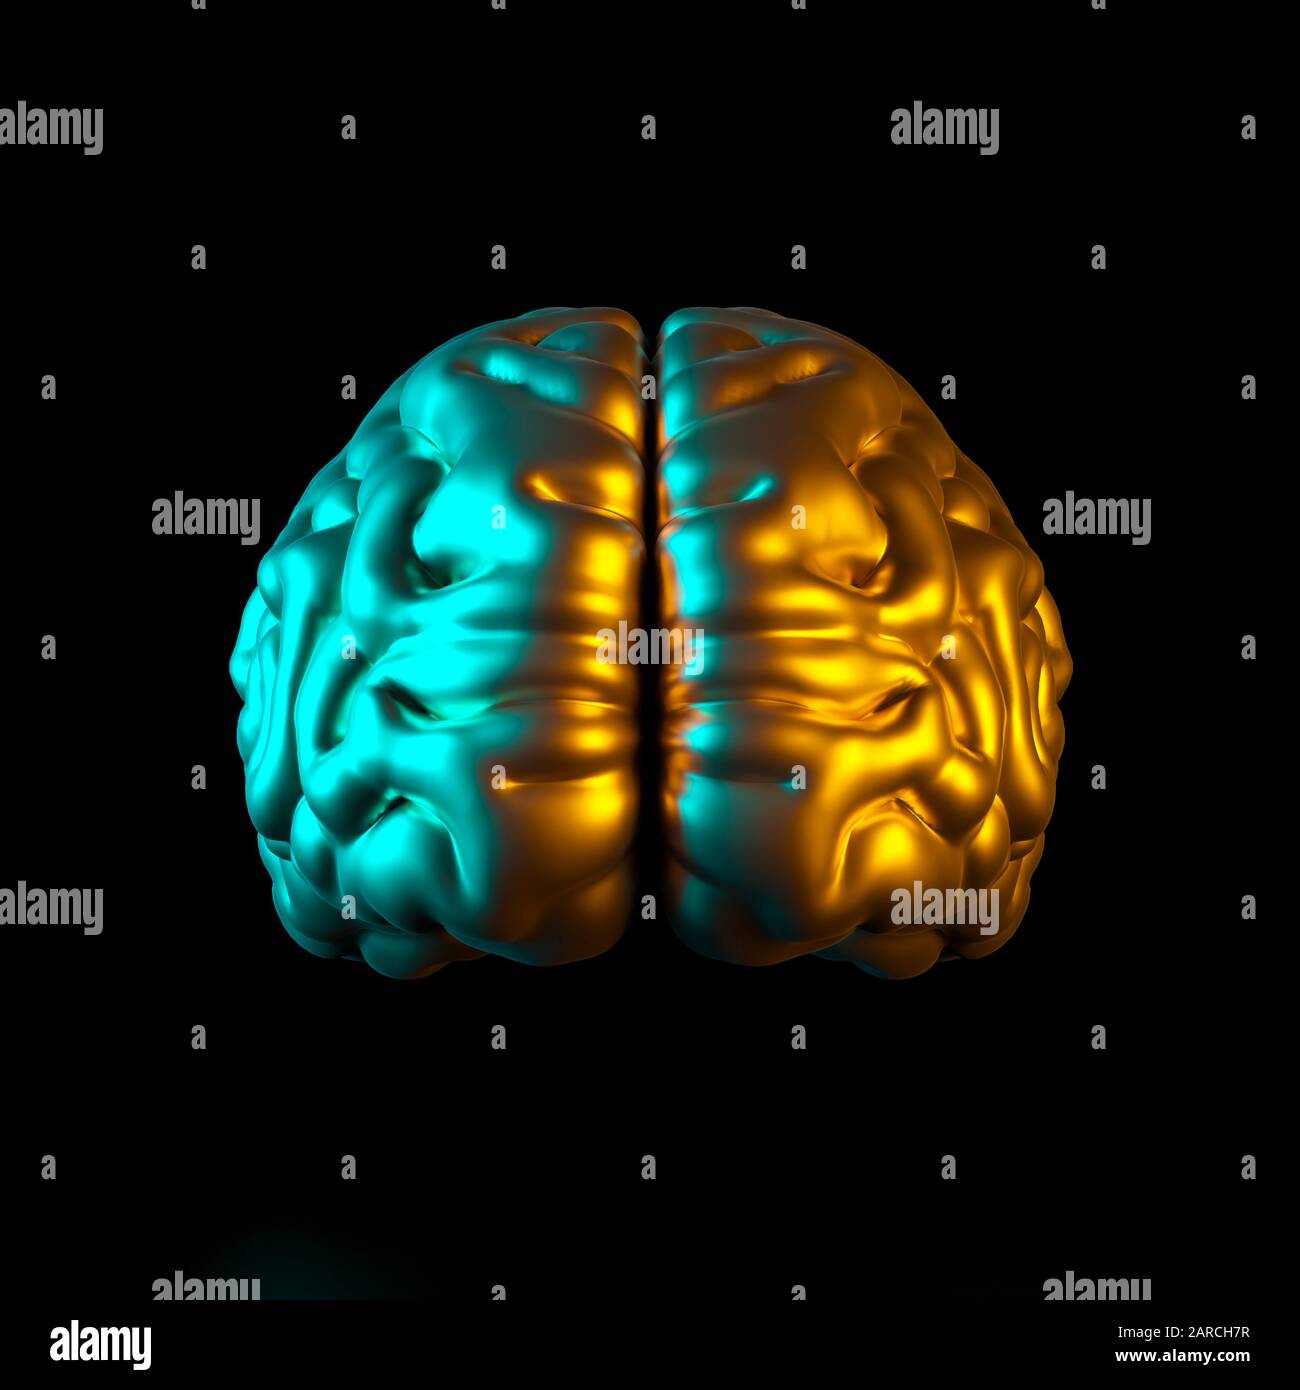 imagen 3d de un cerebro humano de color dorado sobre un fondo negro con luces laterales de color. Formato cuadrado no alrededor de nadie. Inteligencia y psicología Foto de stock